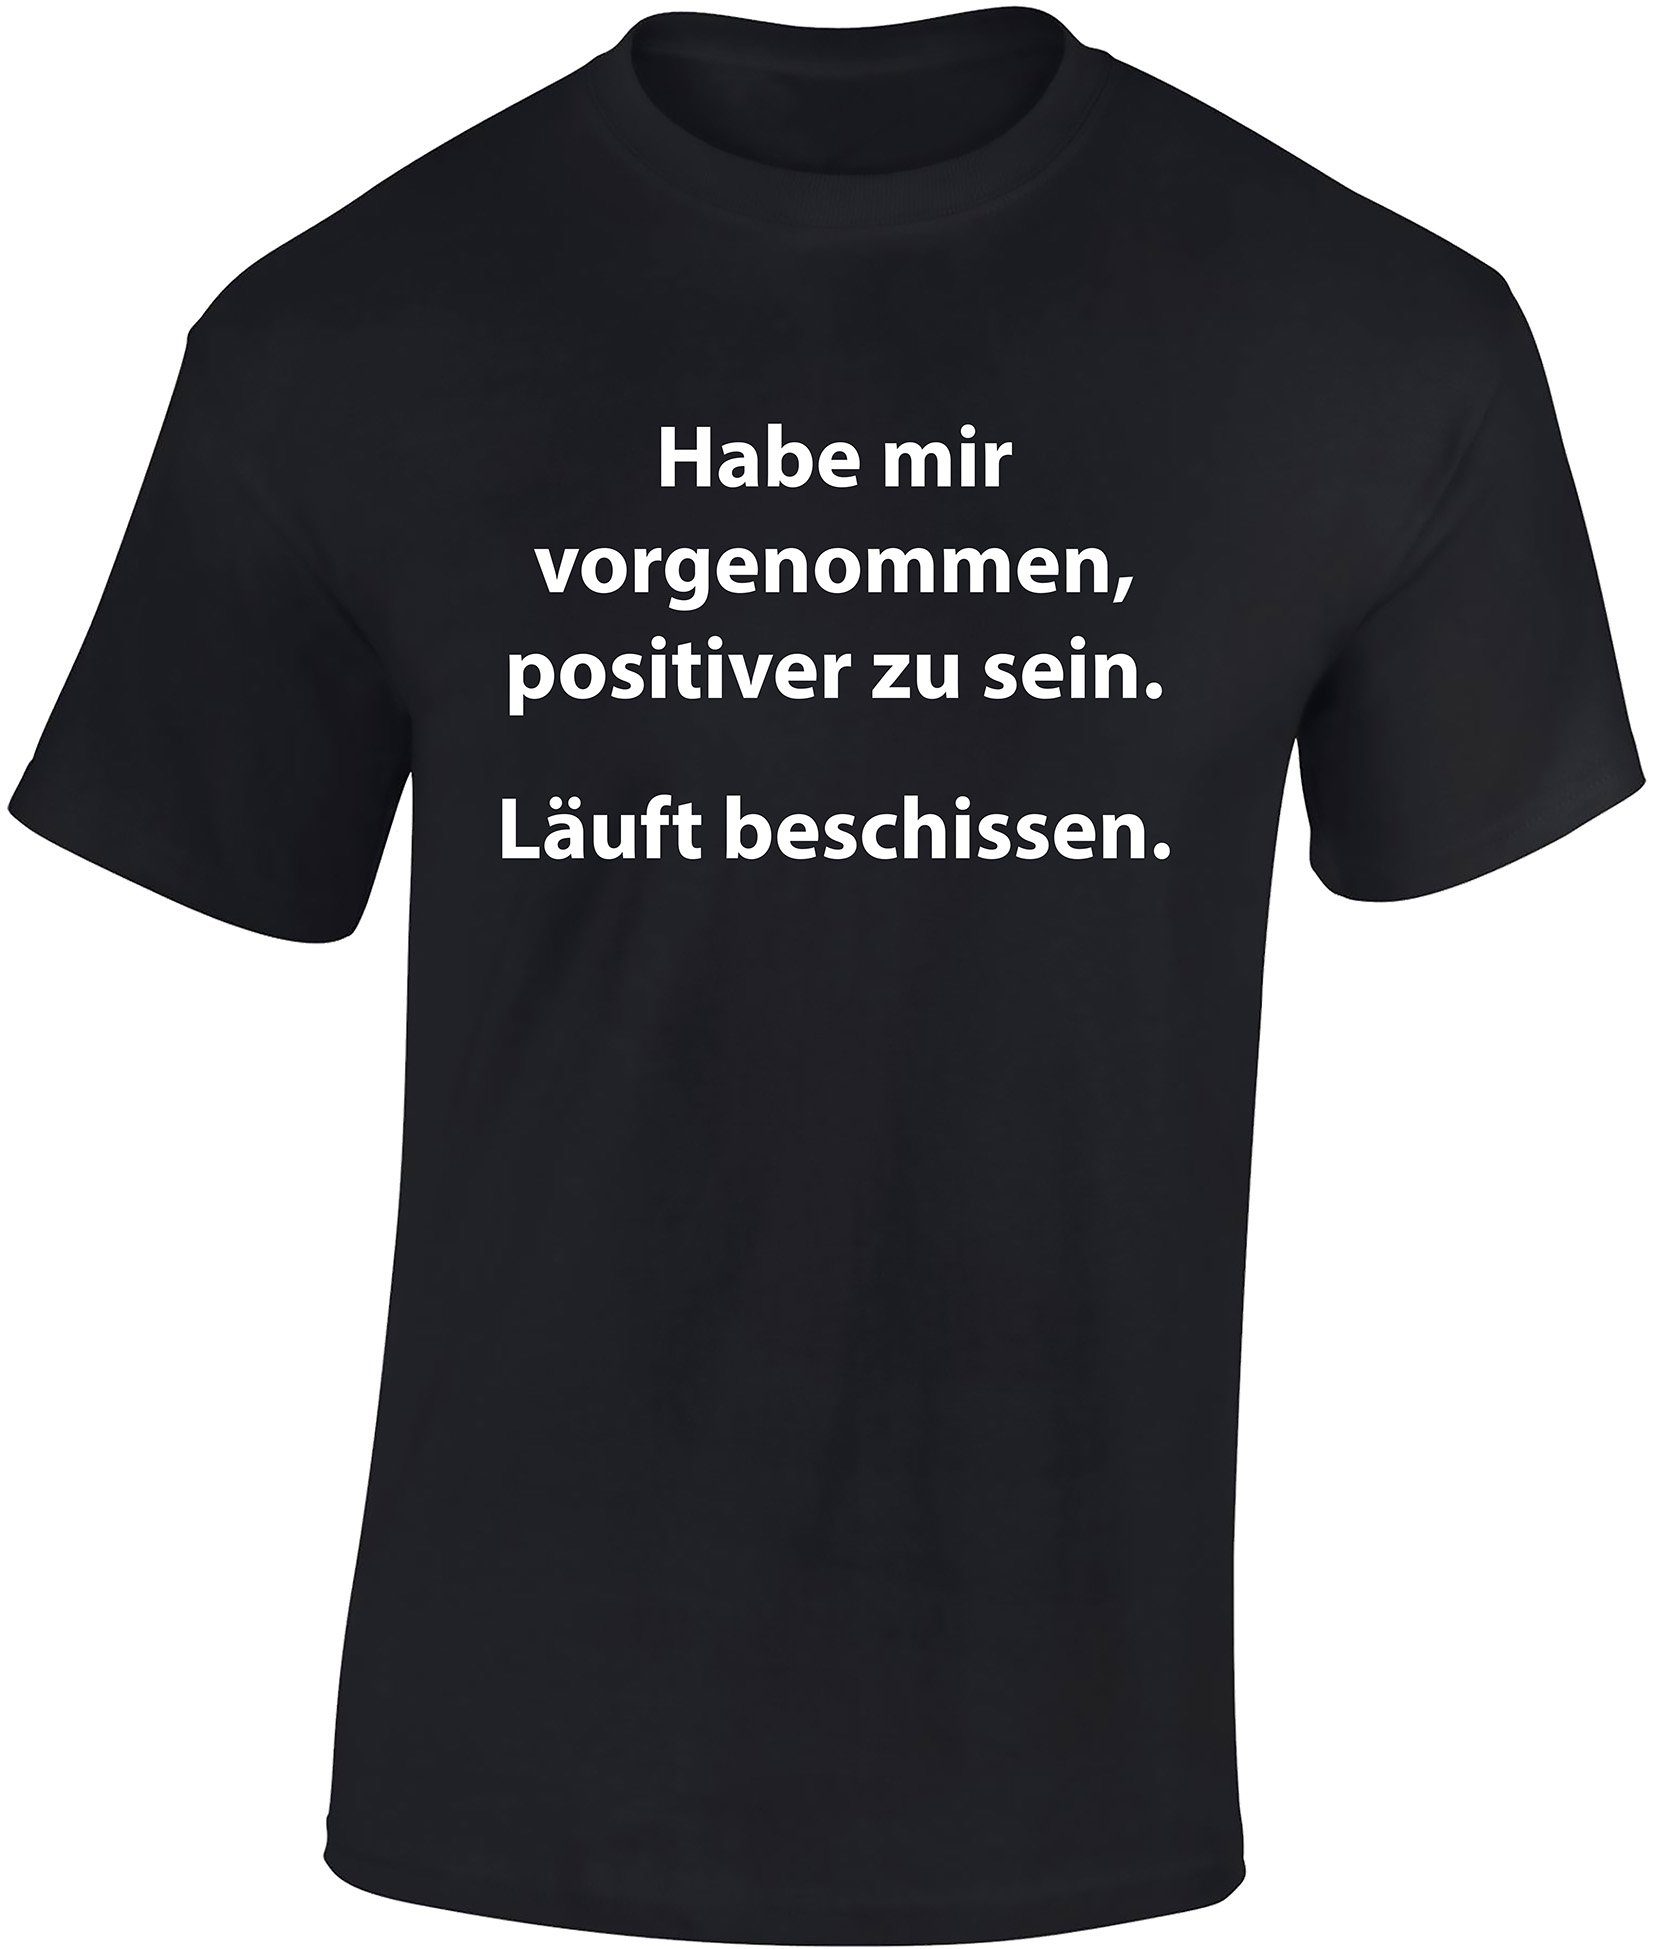 Baddery Print-Shirt Fun T-Shirt - Habe mir vorgenommen positiver zu sein. Läuft beschissen auch Übergrößen, aus Baumwolle, hochwertiger Siebdruck